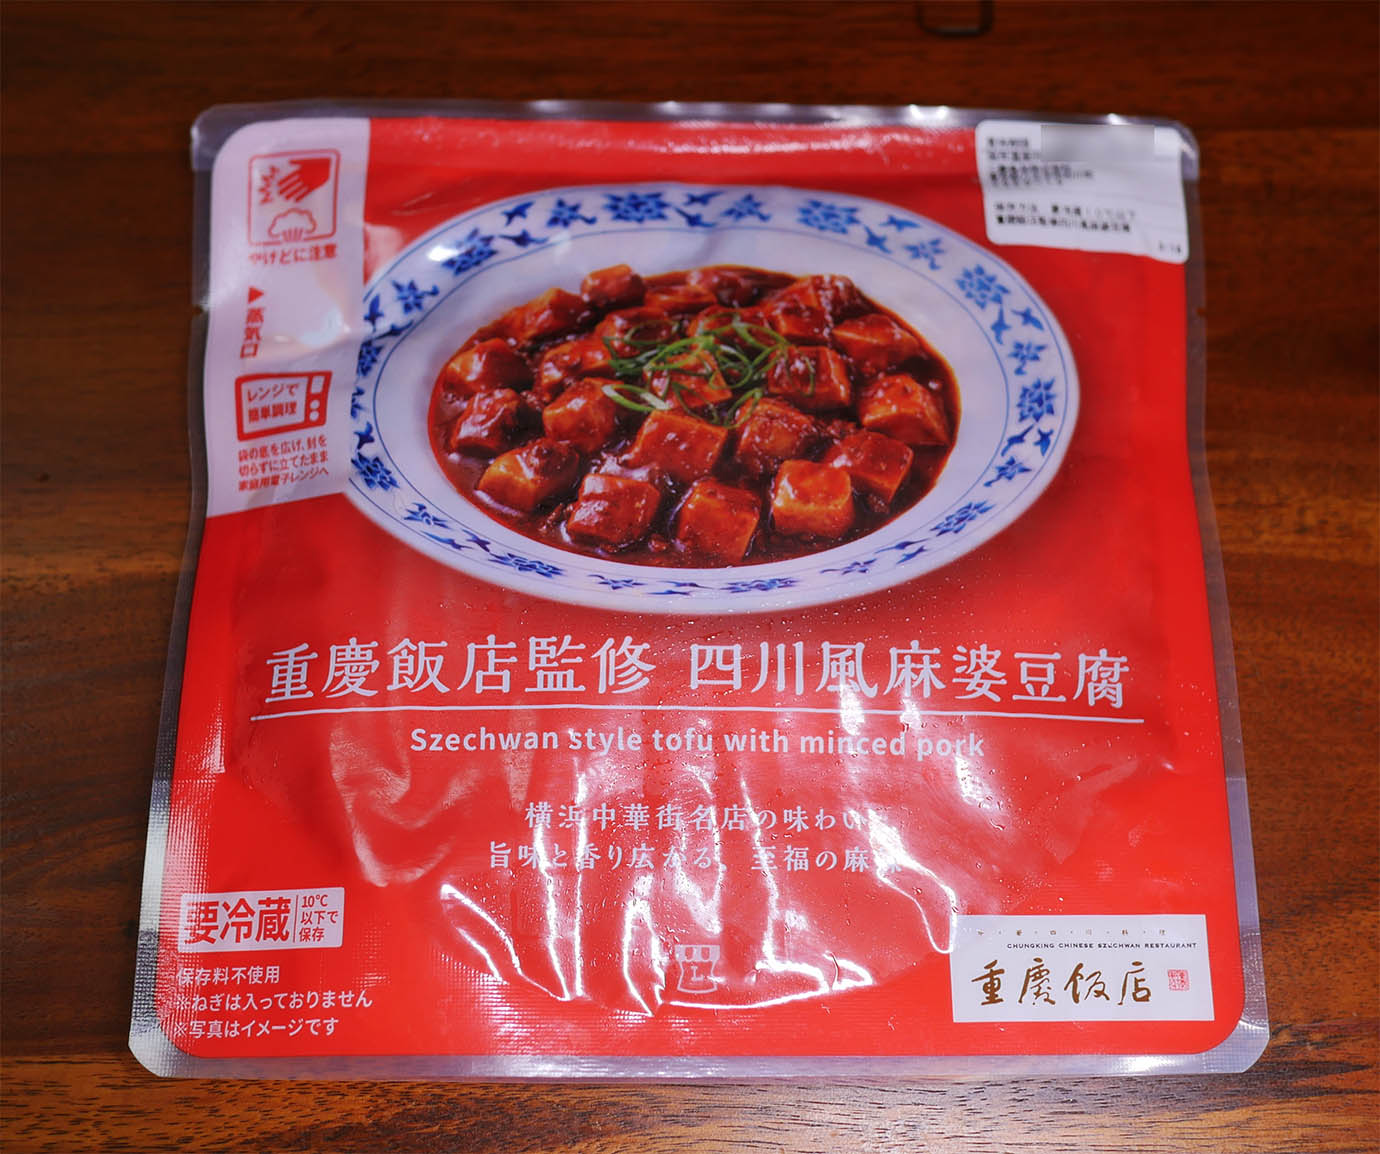 ガチ本格的な麻婆豆腐が食べたいなら 重慶飯店監修 四川風麻婆豆腐 をローソンで買えばよい コンビニ通信